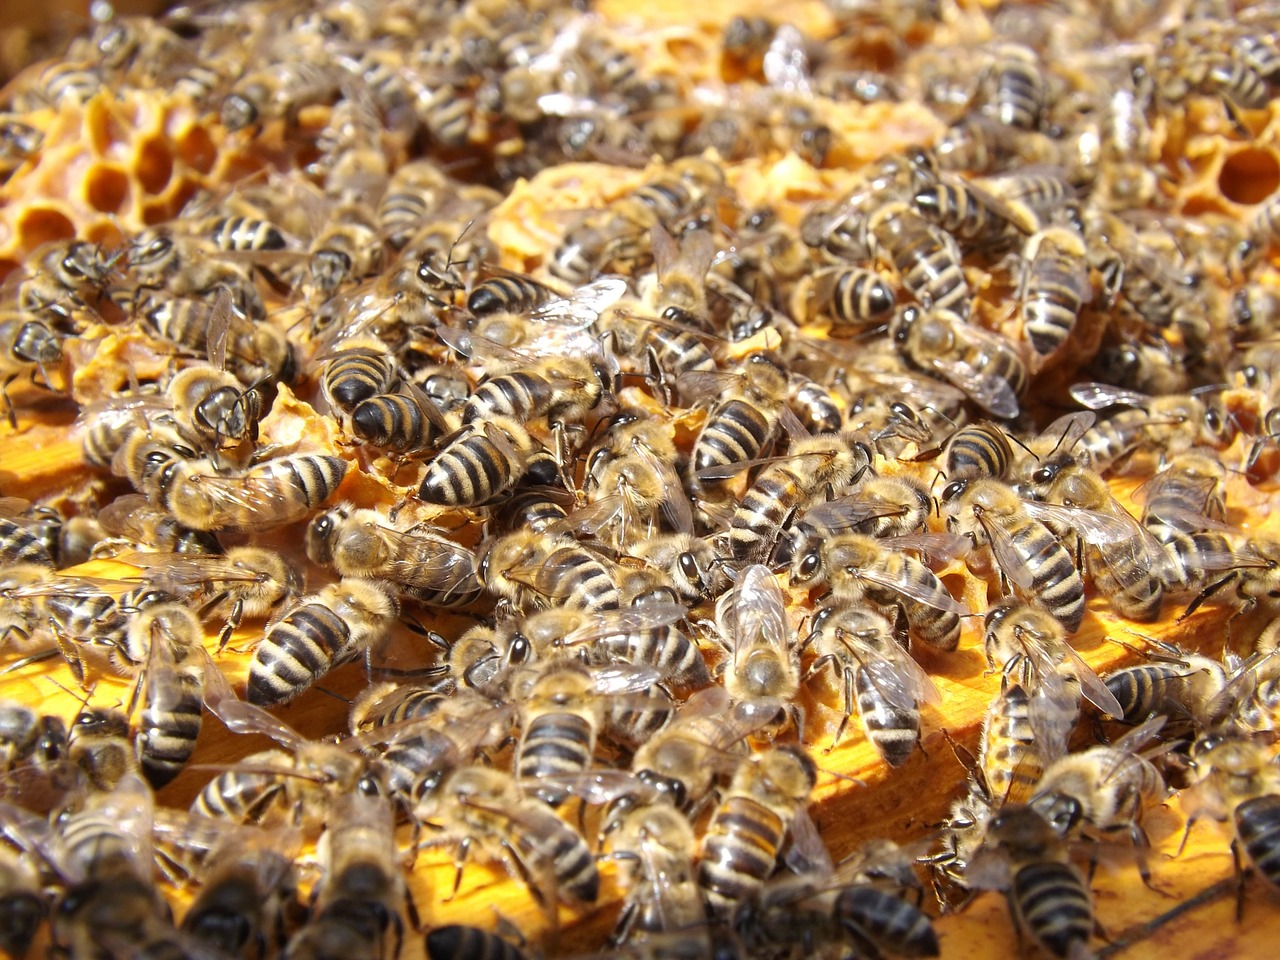 Koronavírus - Minden hazai méhész szabadon gyakorolhatja tevékenységét - lakhely-elhagyási korlátozások esetén is